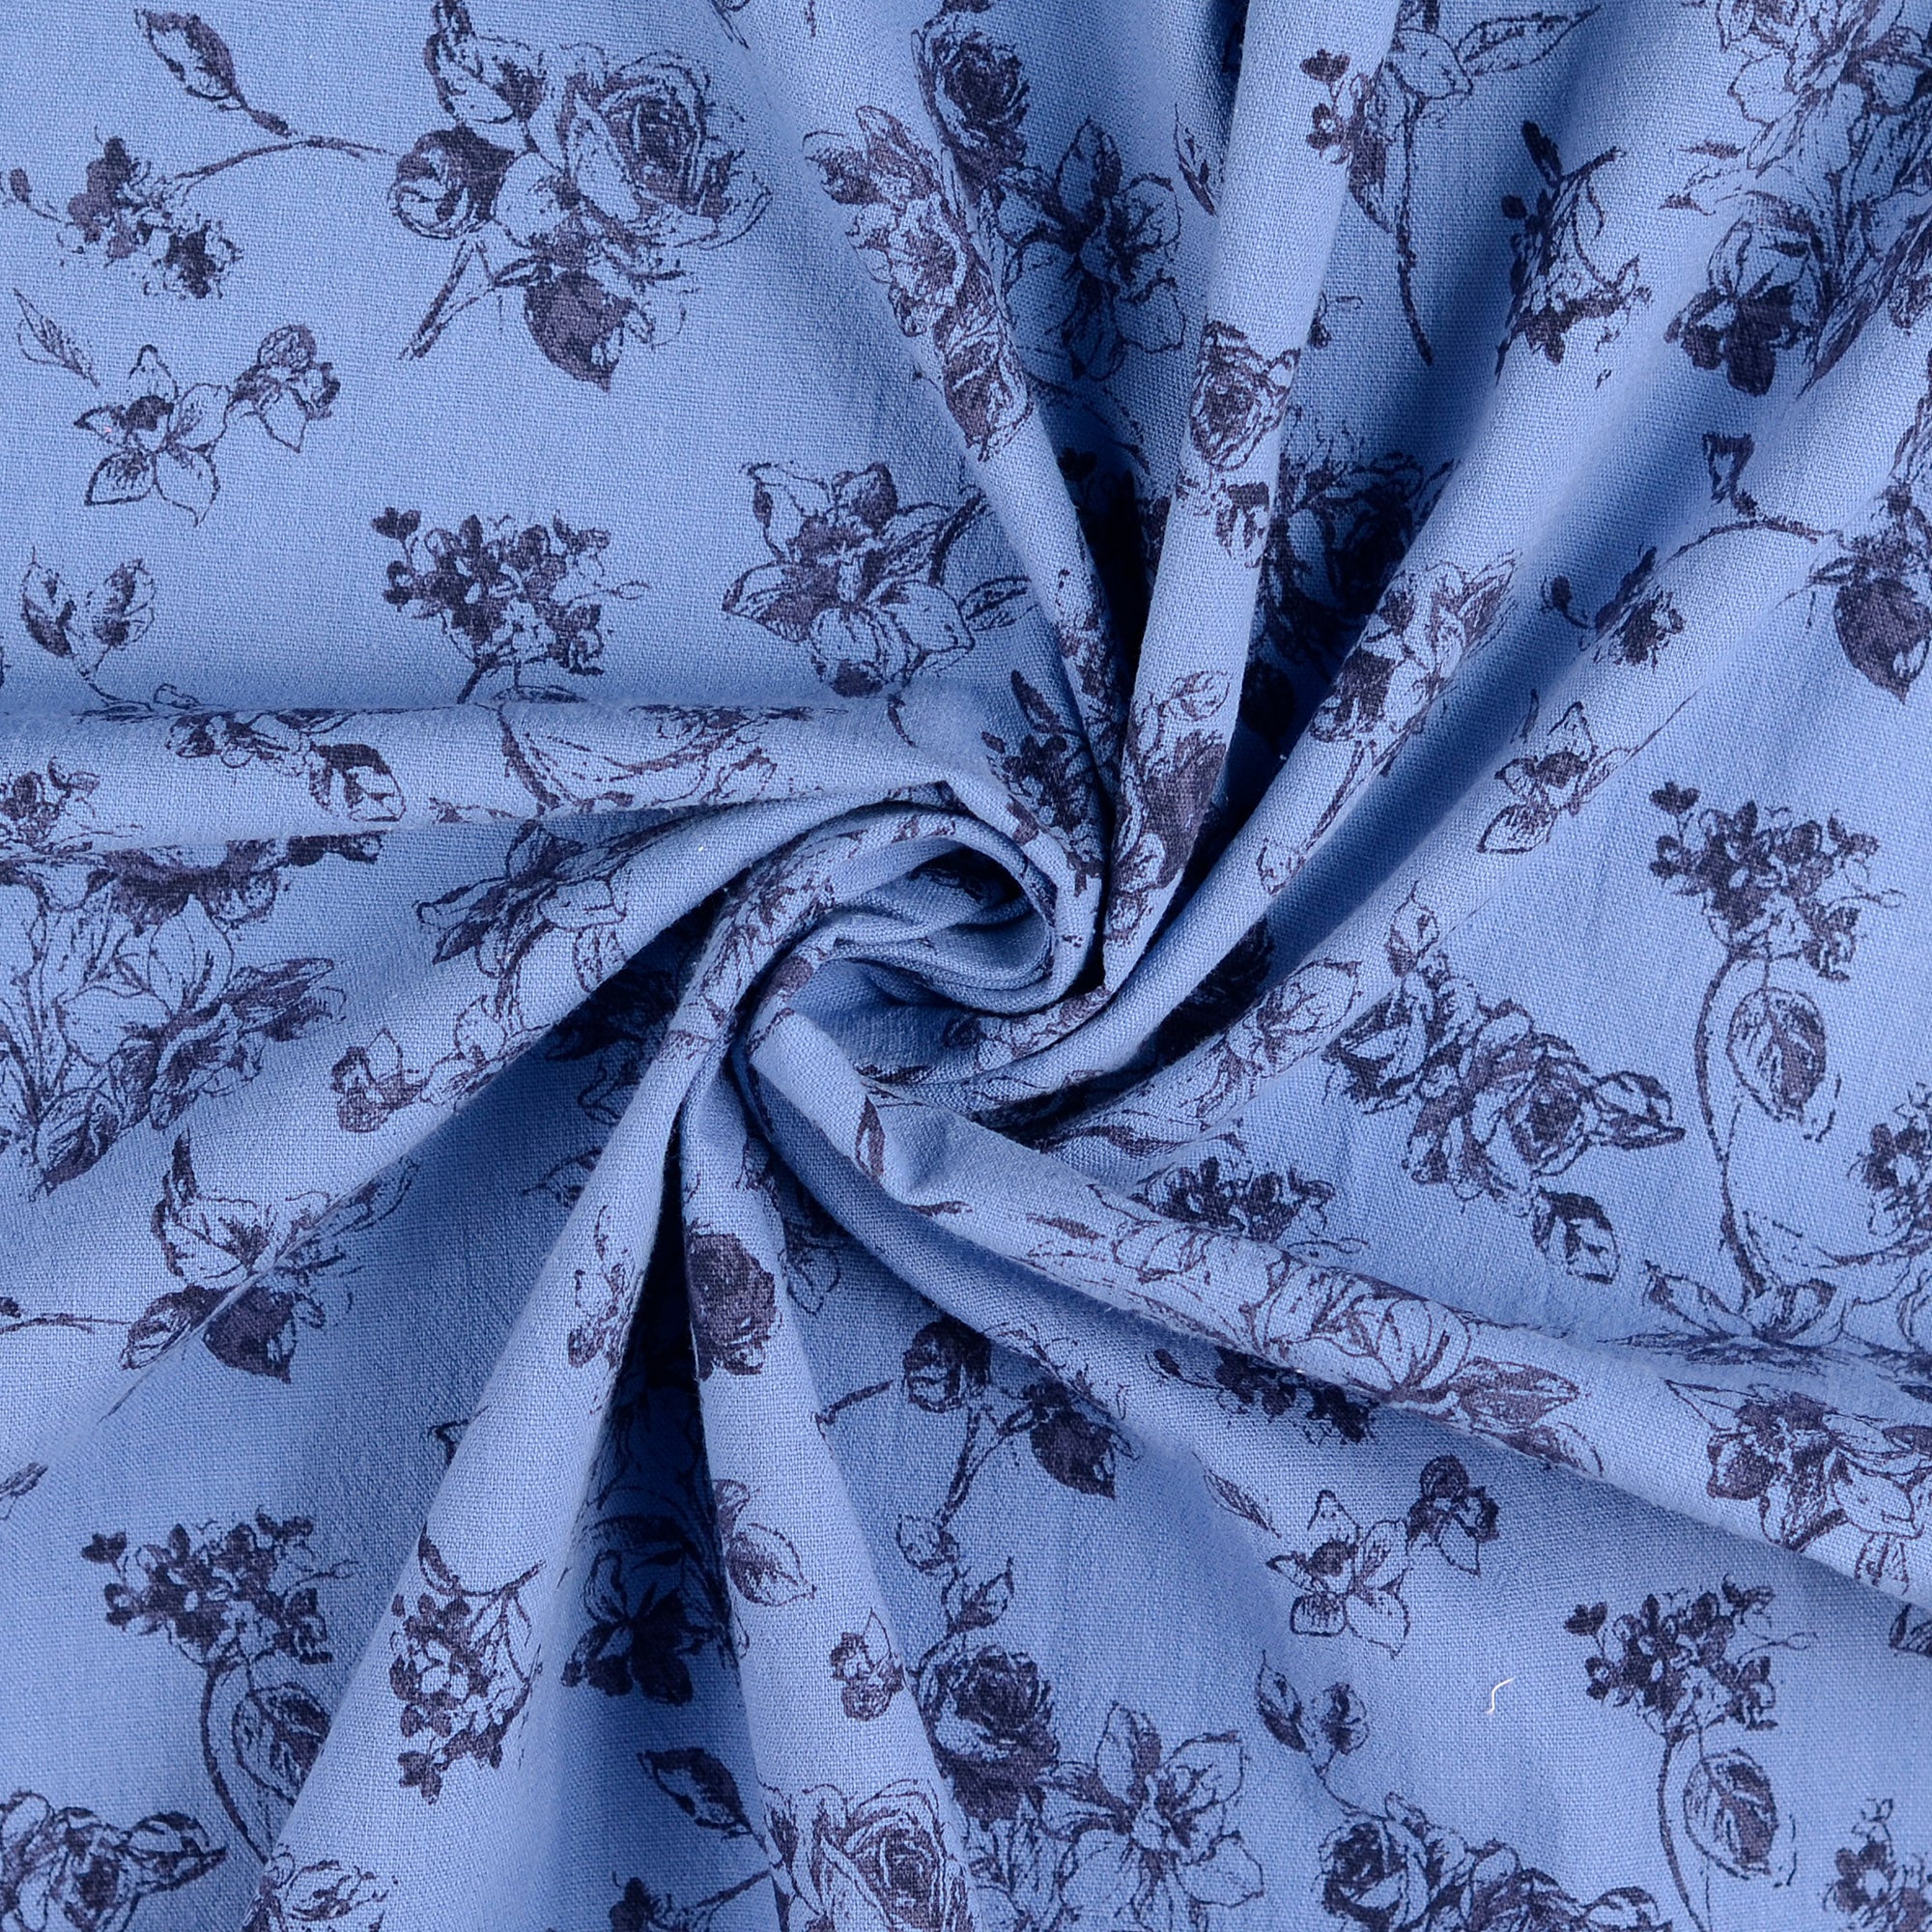 REMNANT 2.52 Metres - Vintage Floral Washed Cotton in Blue